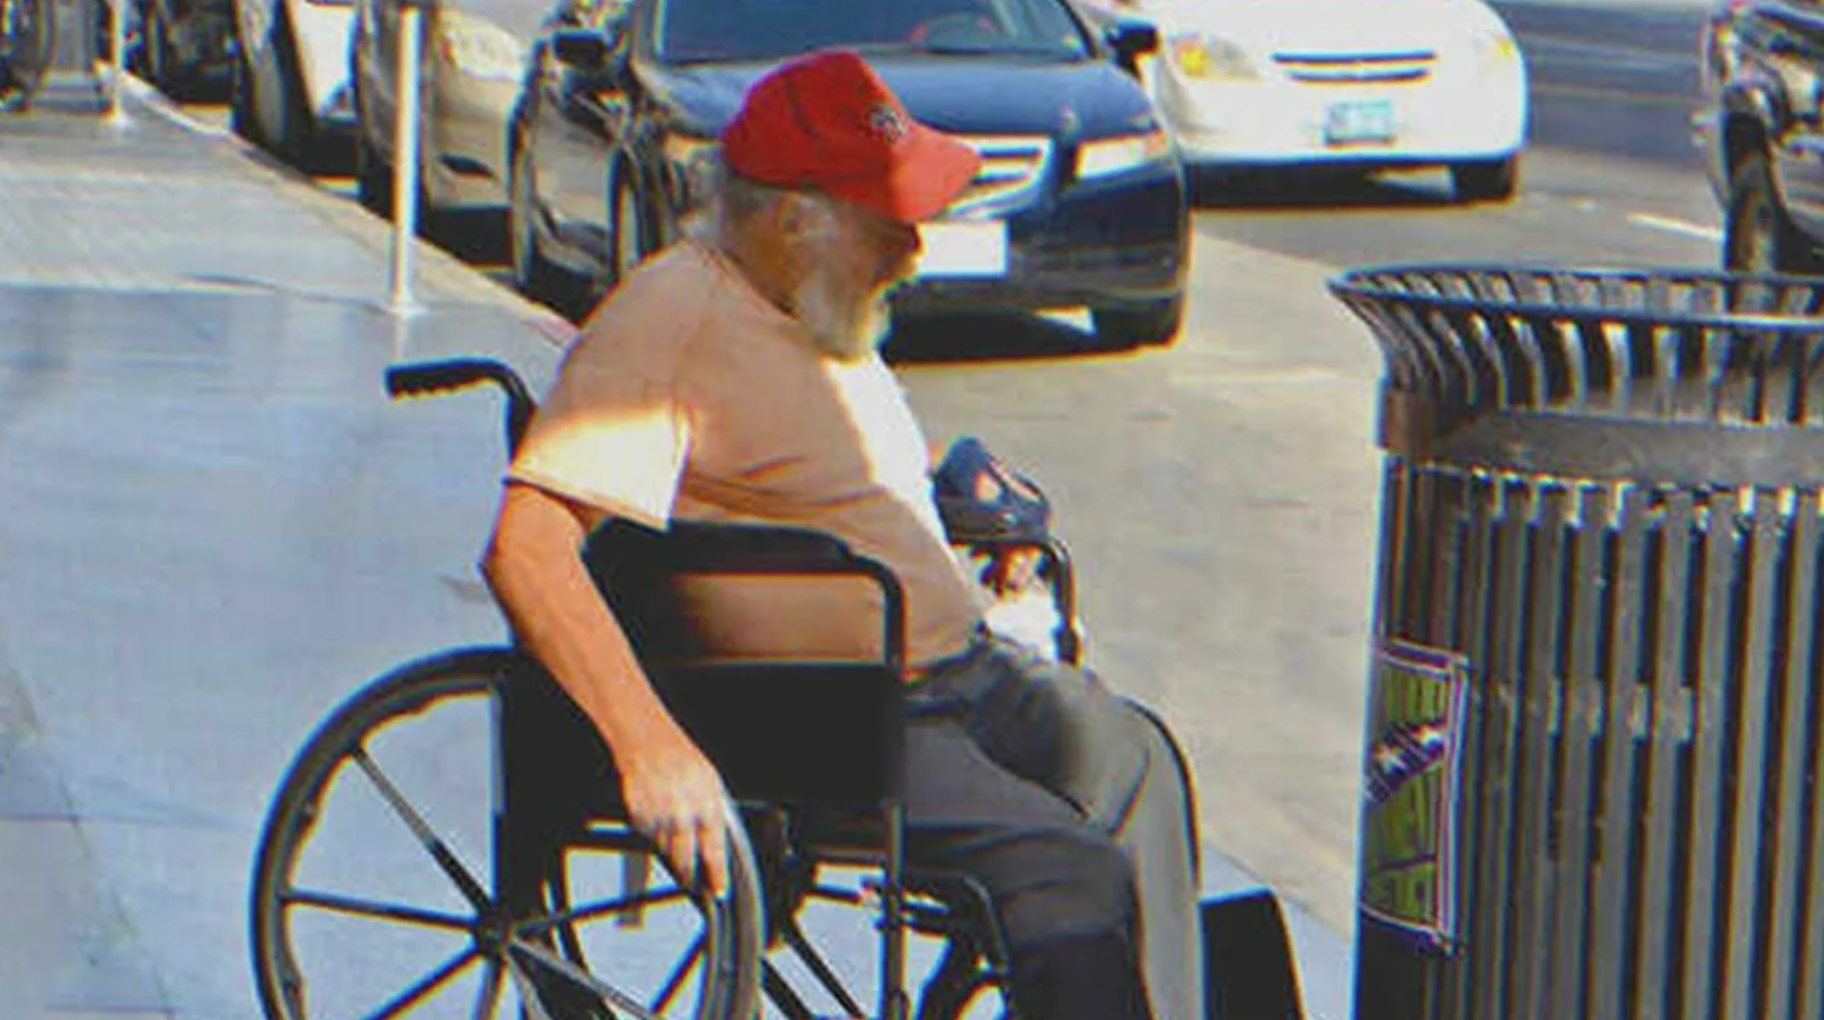 Homeless man in a wheelchair | Source: Shutterstock